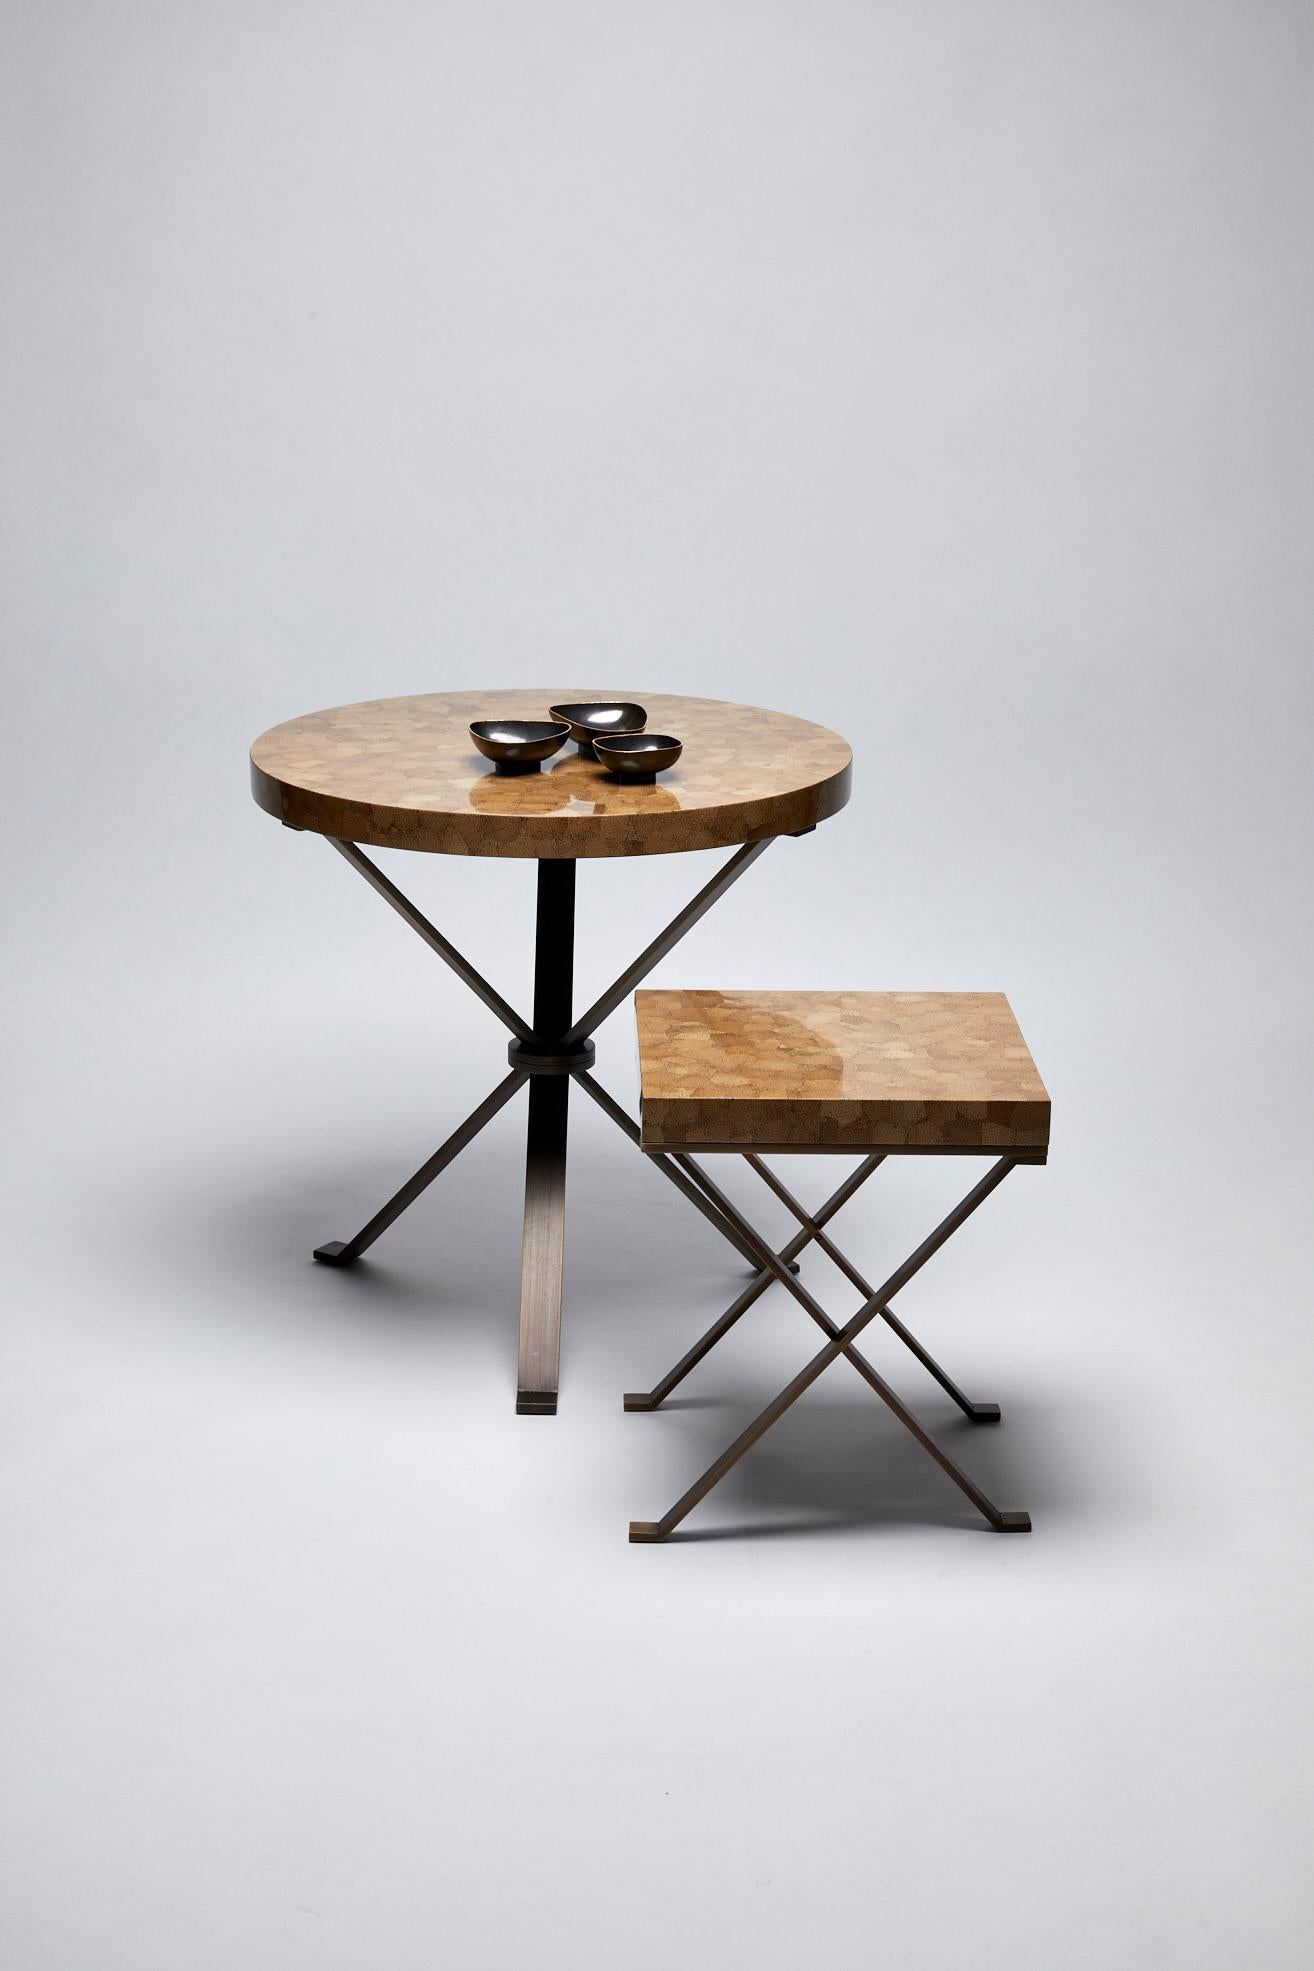 Dieser Tisch mit klassischem Design besticht durch seine Originalität im Umgang mit den Materialien. Das Plateau aus Kokosnuss, das an die asiatischen Einflüsse des Designers erinnert, und die Platte aus bronzefarbenem, patiniertem Edelstahl machen